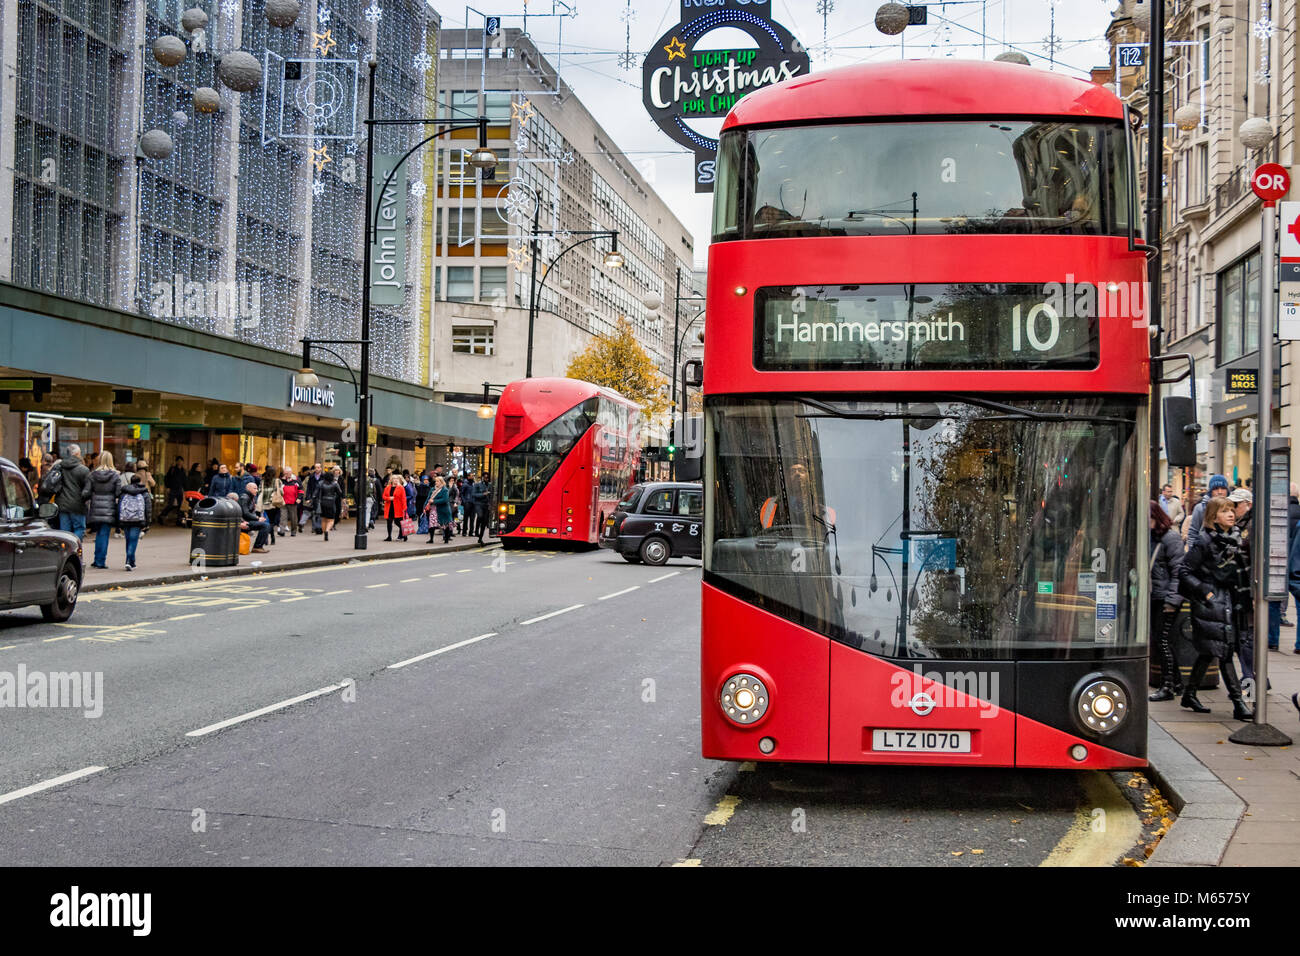 No 10 autobus per Hammersmith ad una fermata di autobus sulla Oxford St di Londra, la linea di autobus n. 10 è stata ritirata dal servizio nel novembre 2018 Foto Stock